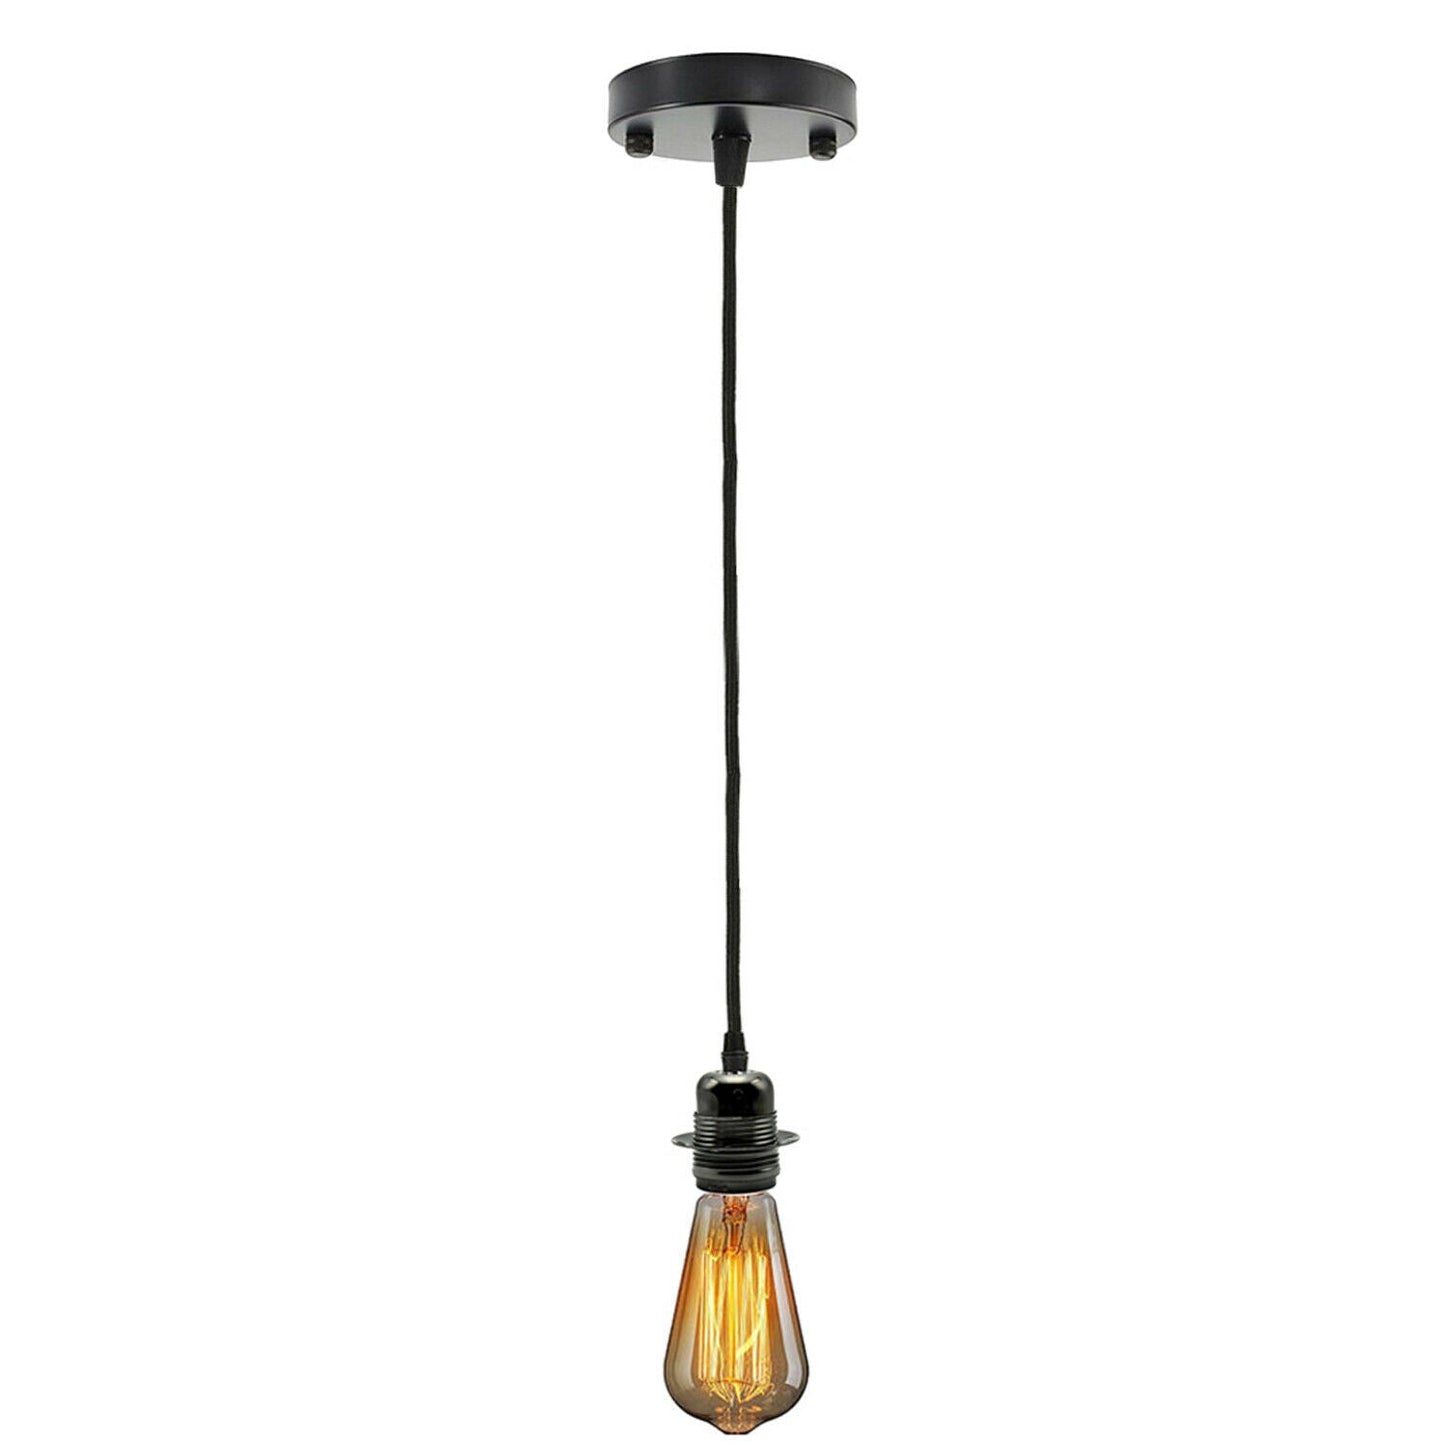 Brown Ceiling Rose Fabric Flex Hanging Pendant Light Lamp Holder FREE Bulb Fitting Lighting Kit~2334